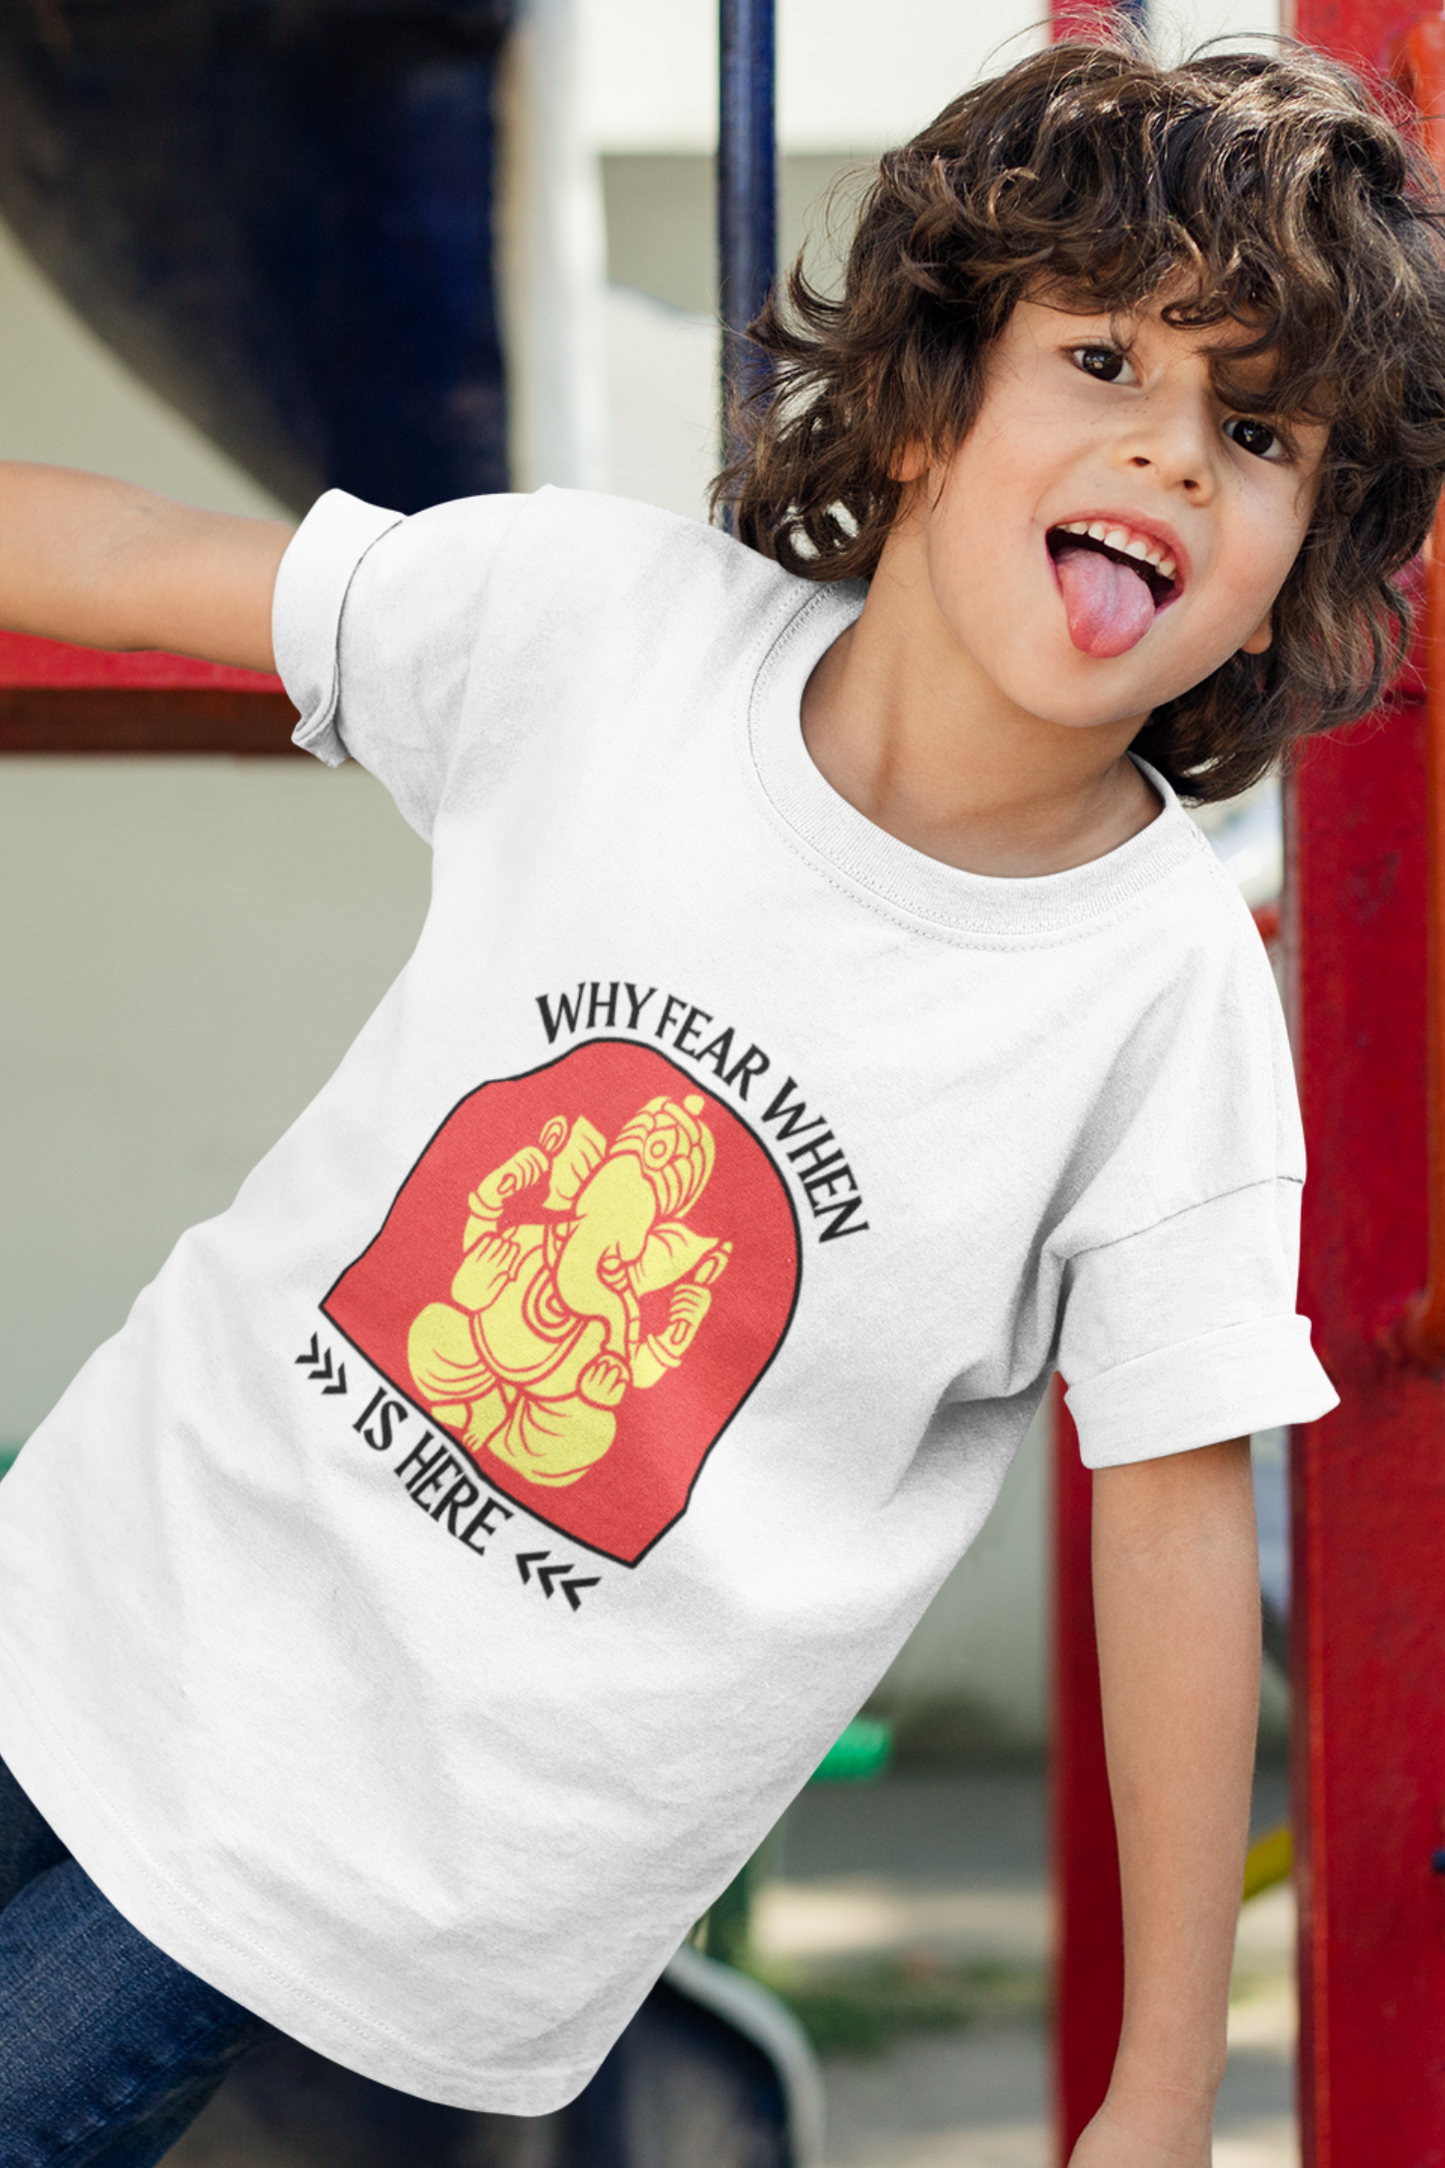 Why Fear When Ganesha Is Here Kid's T-shirt, Ganpati Bappa Morya Kids T-Shirt - nautunkee